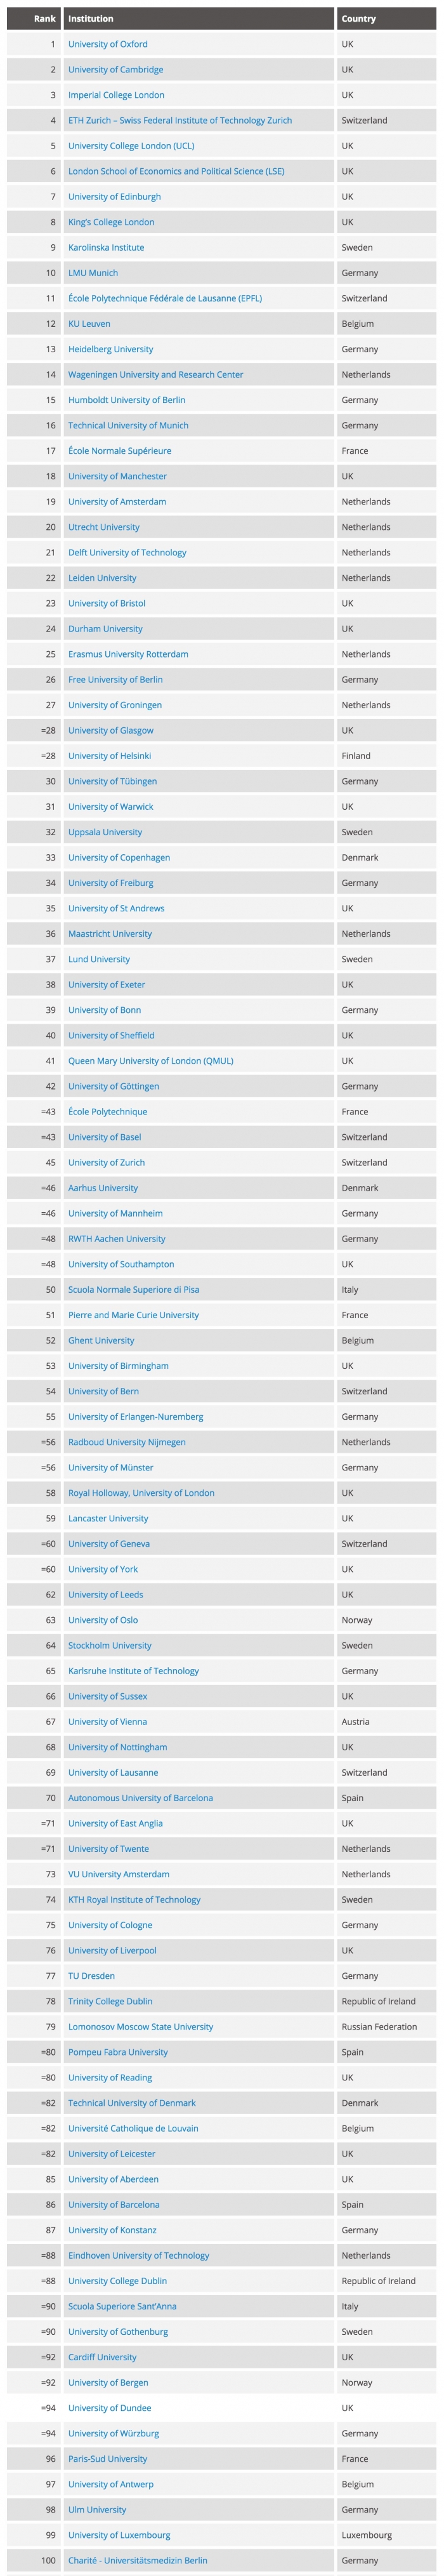 2016欧洲大学排名